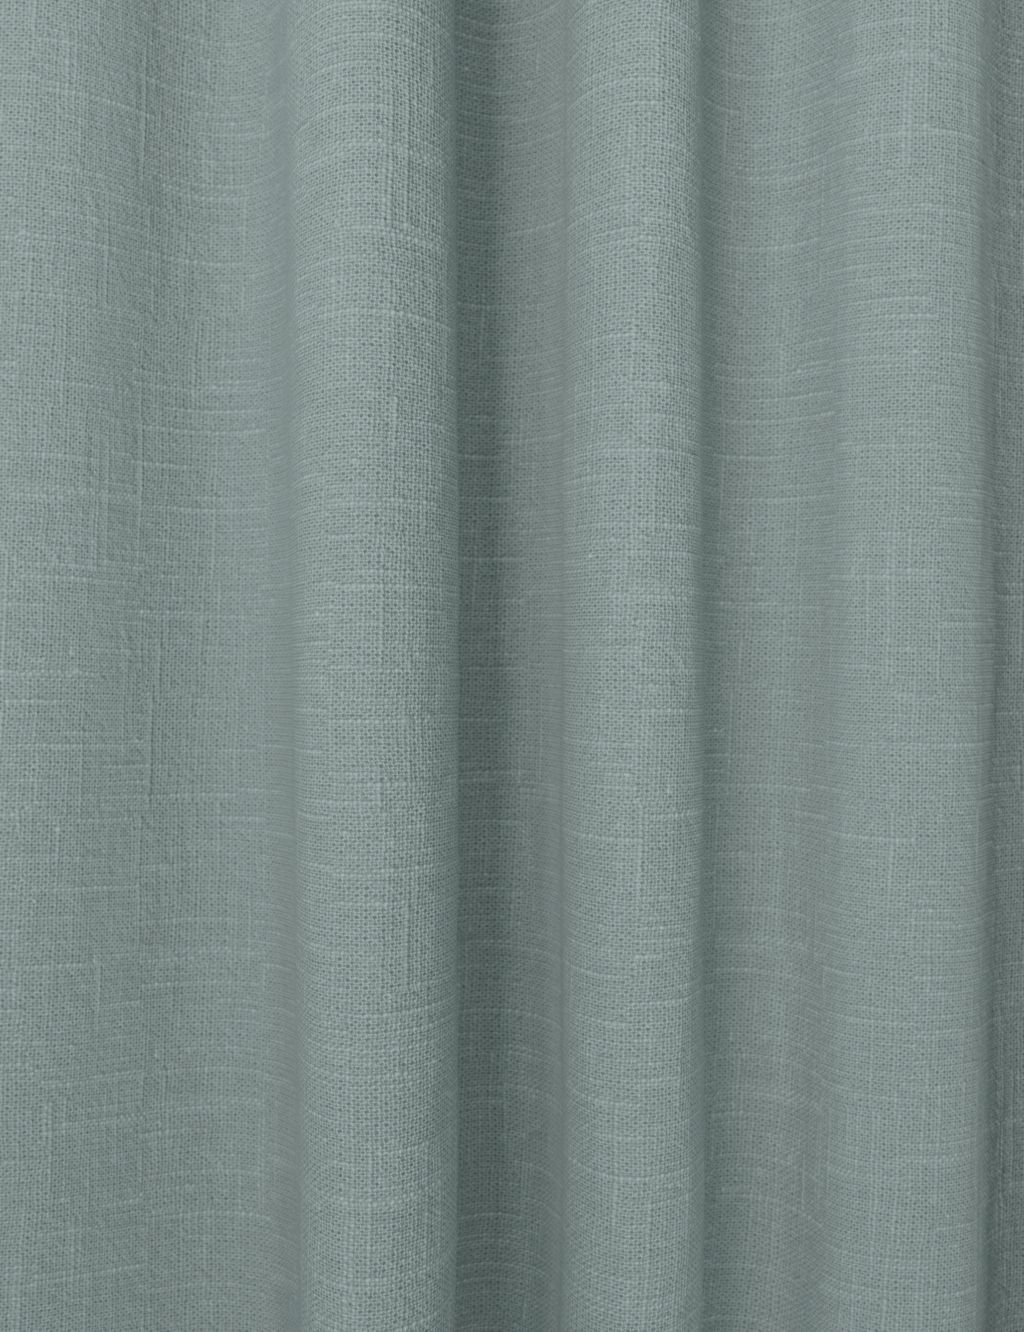 Linen Blend Pencil Pleat Curtains image 2